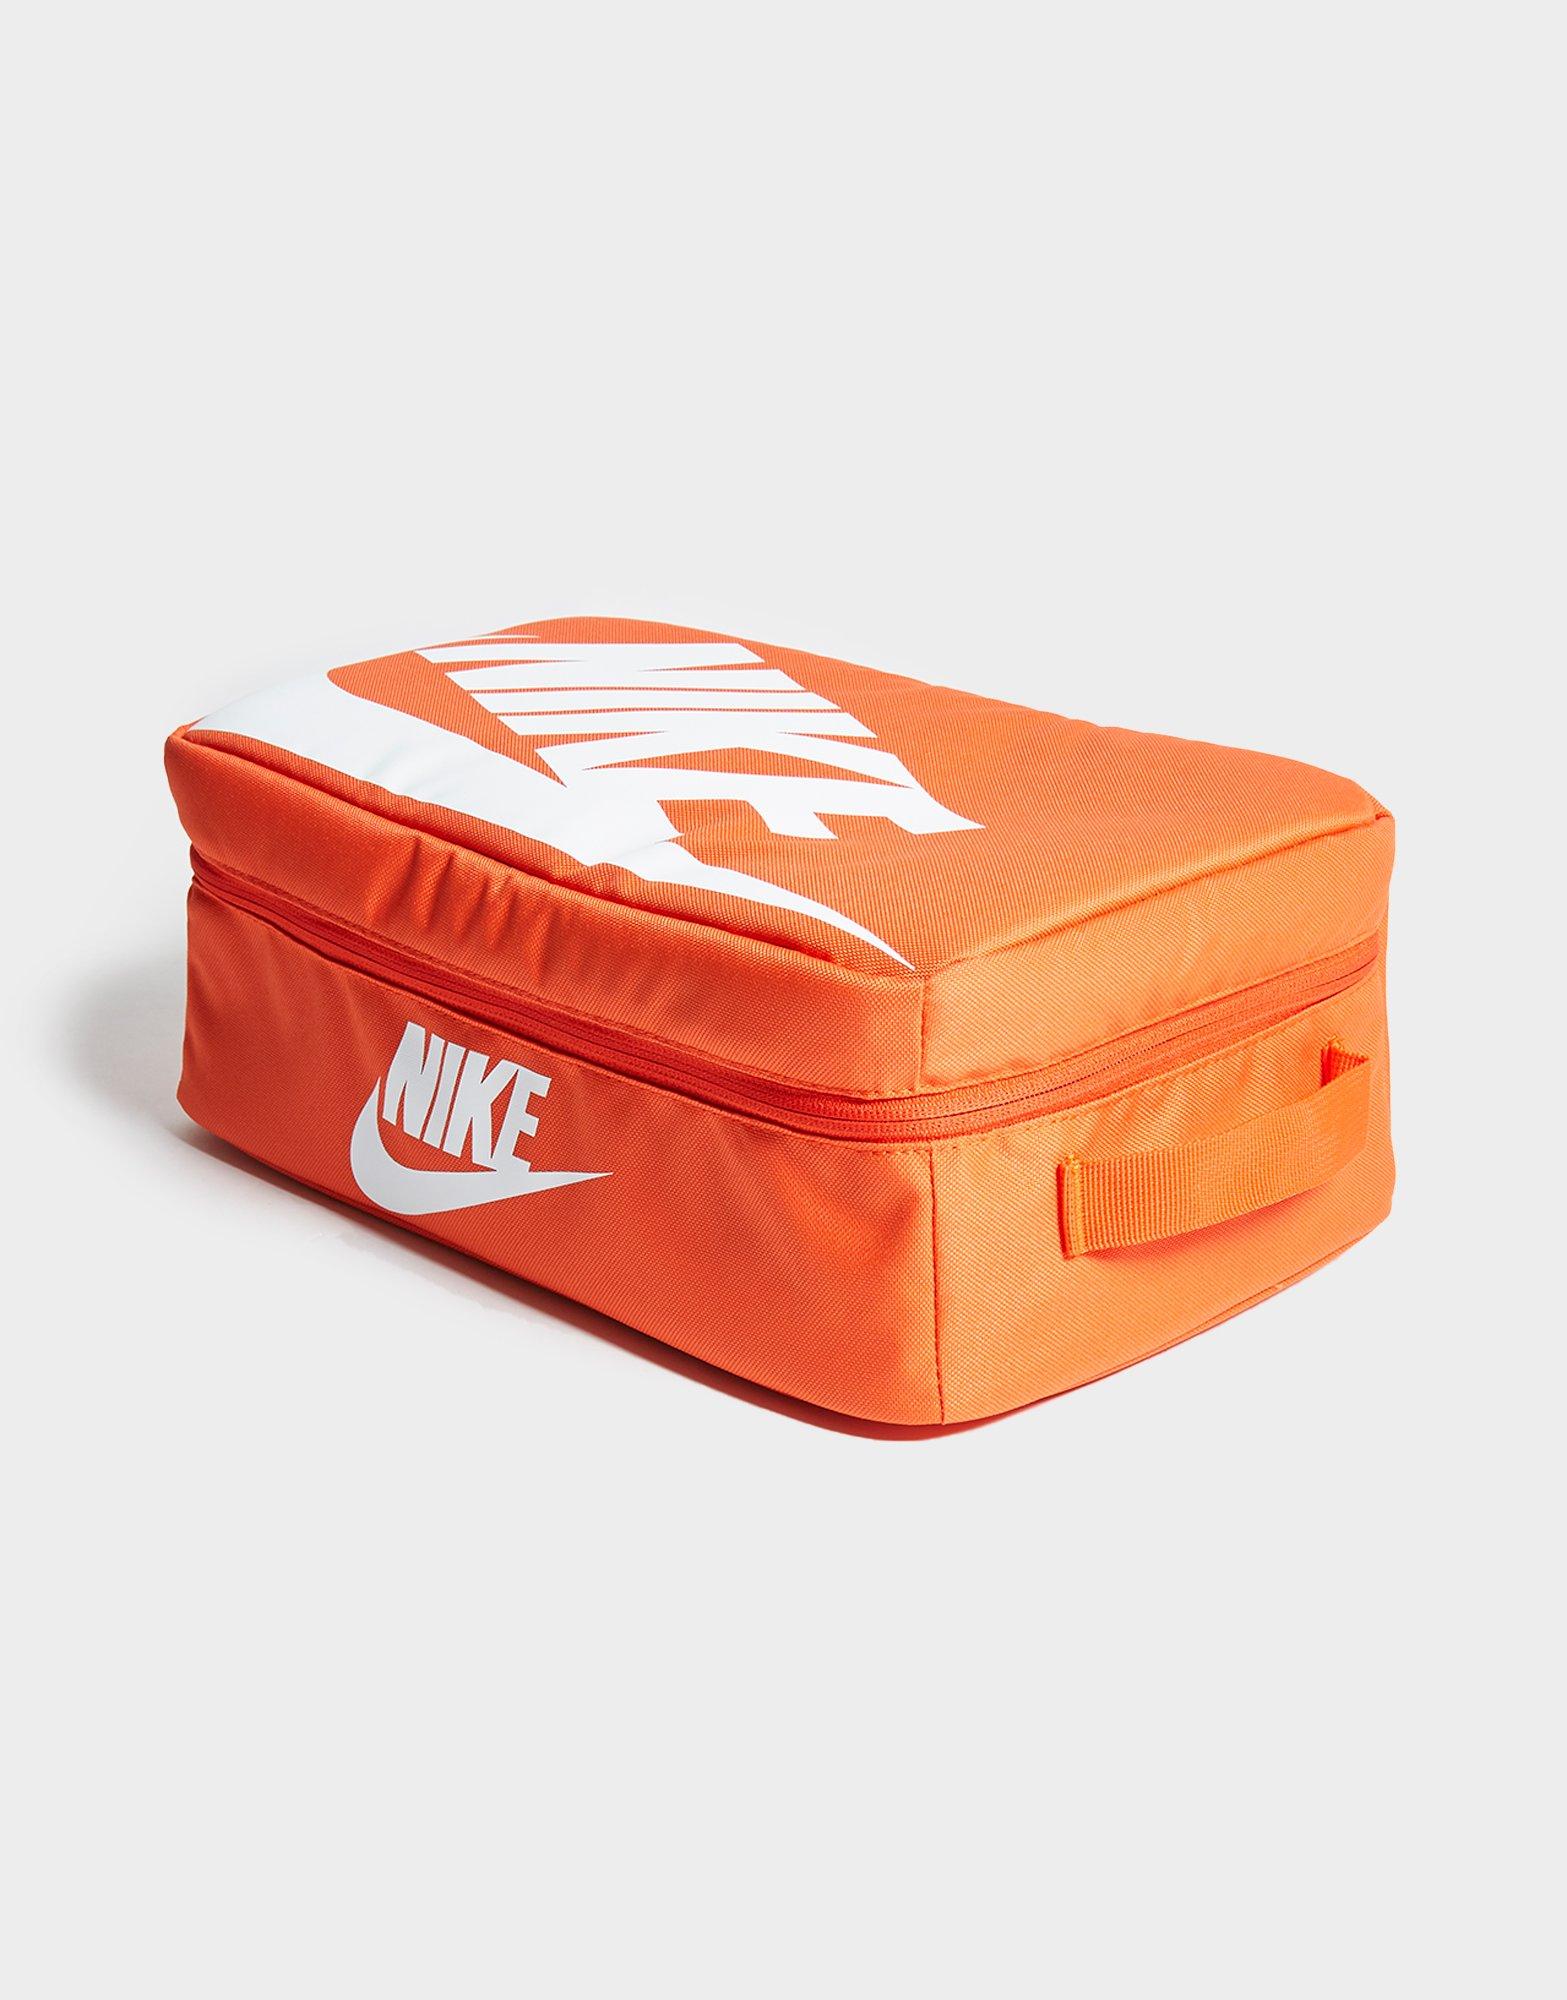 nike shoe box lunch box